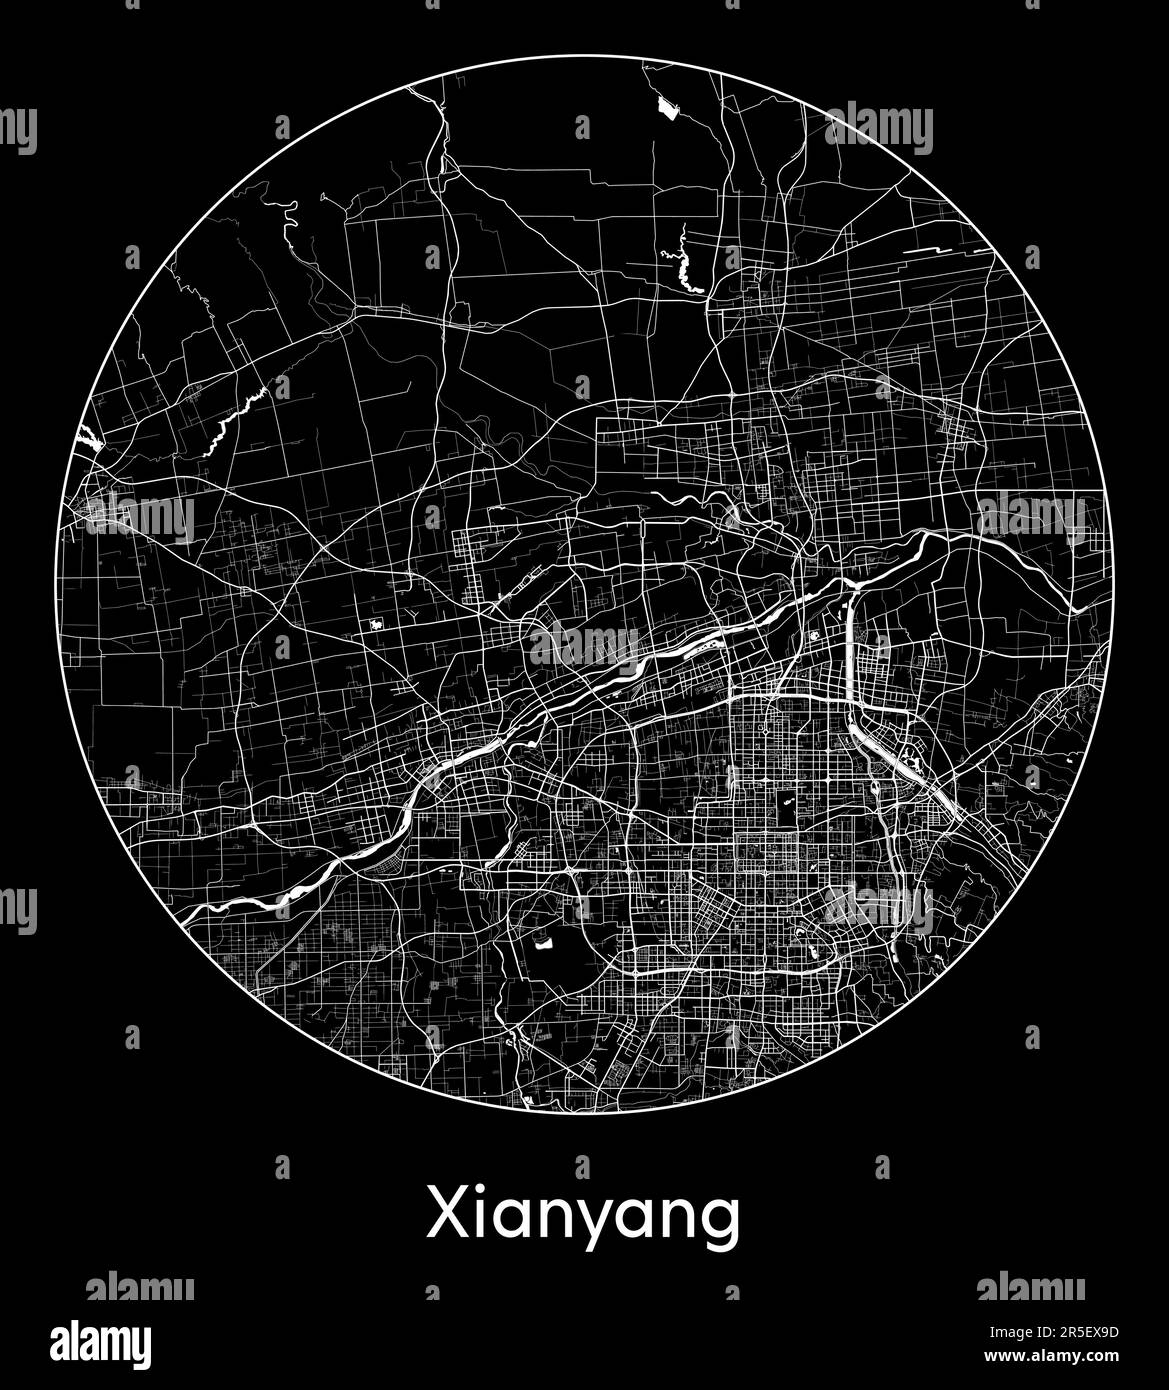 City Map Xianyang China Asia vector illustration Stock Vector Image ...